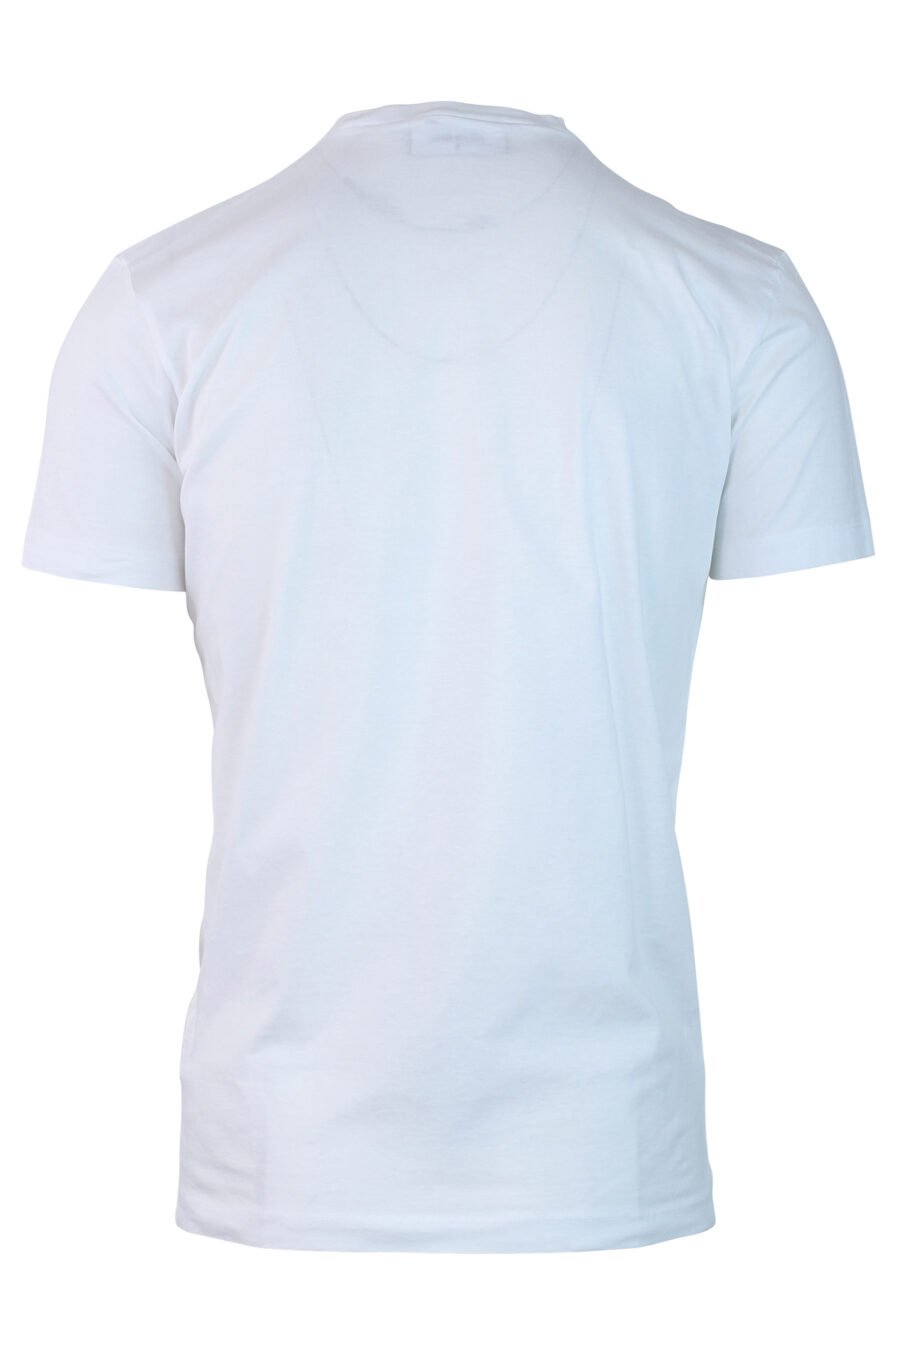 Camiseta blanca con minilogo "icon" - IMG 0722